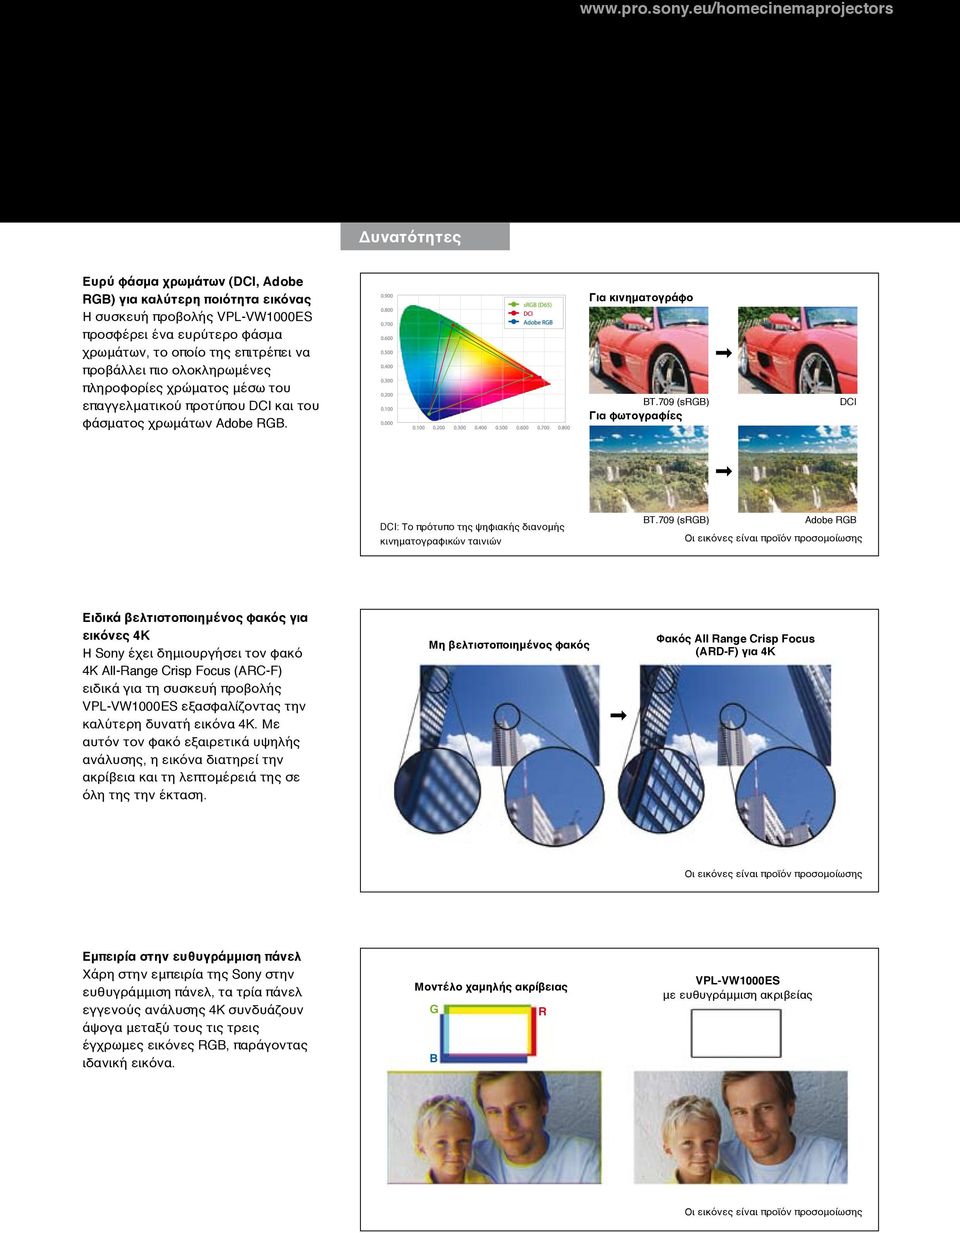 πληροφορίες χρώματος μέσω του επαγγελματικού προτύπου DCI και του φάσματος χρωμάτων Adobe RGB. Για κινηματογράφο BT.